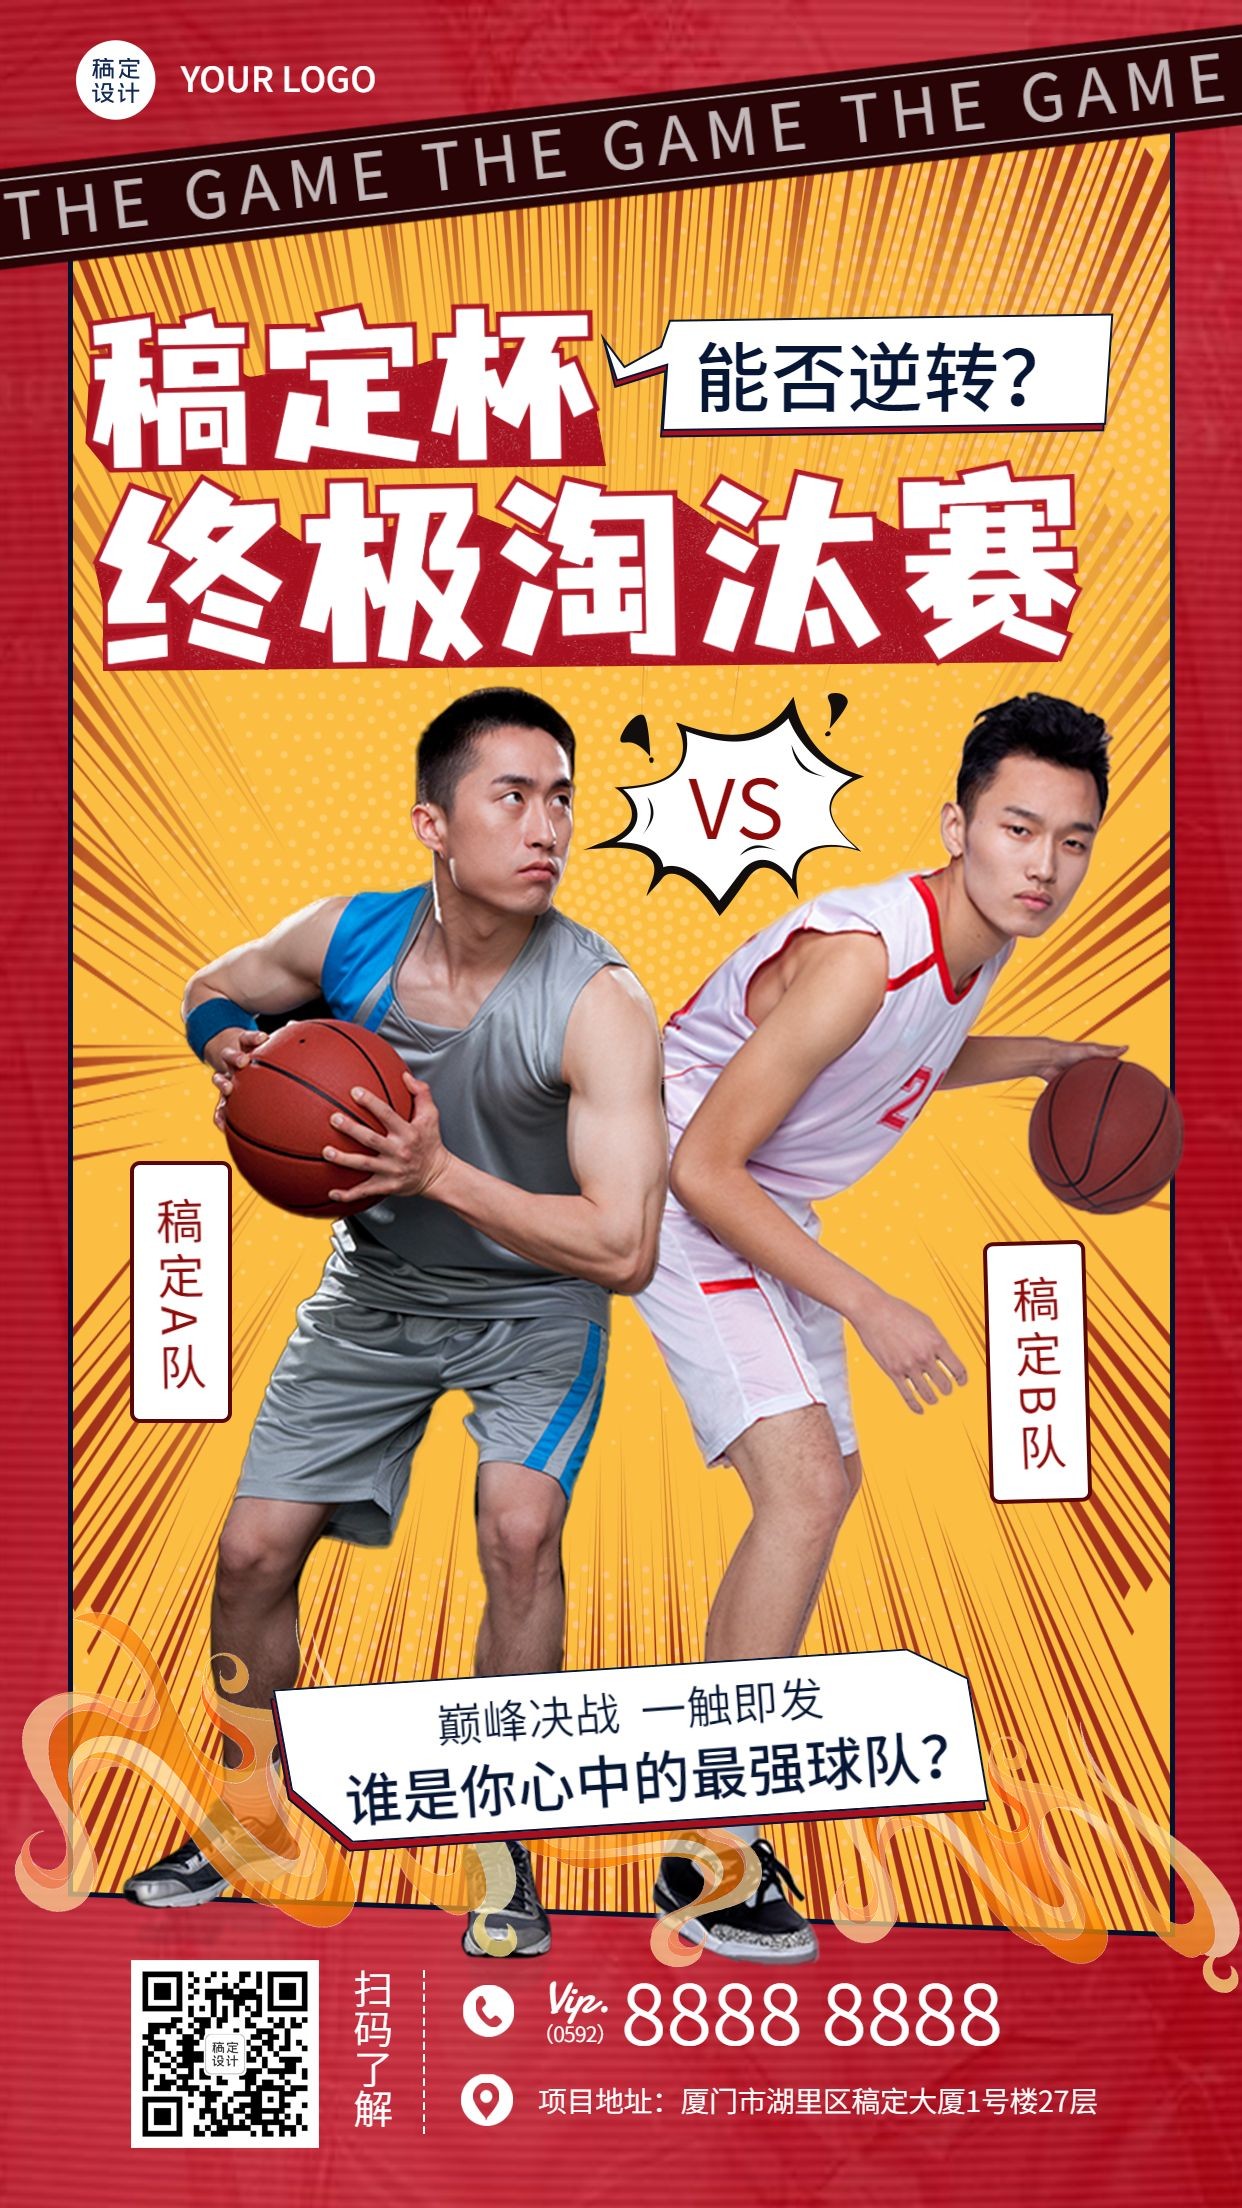 篮球比赛球队PK热火手机海报